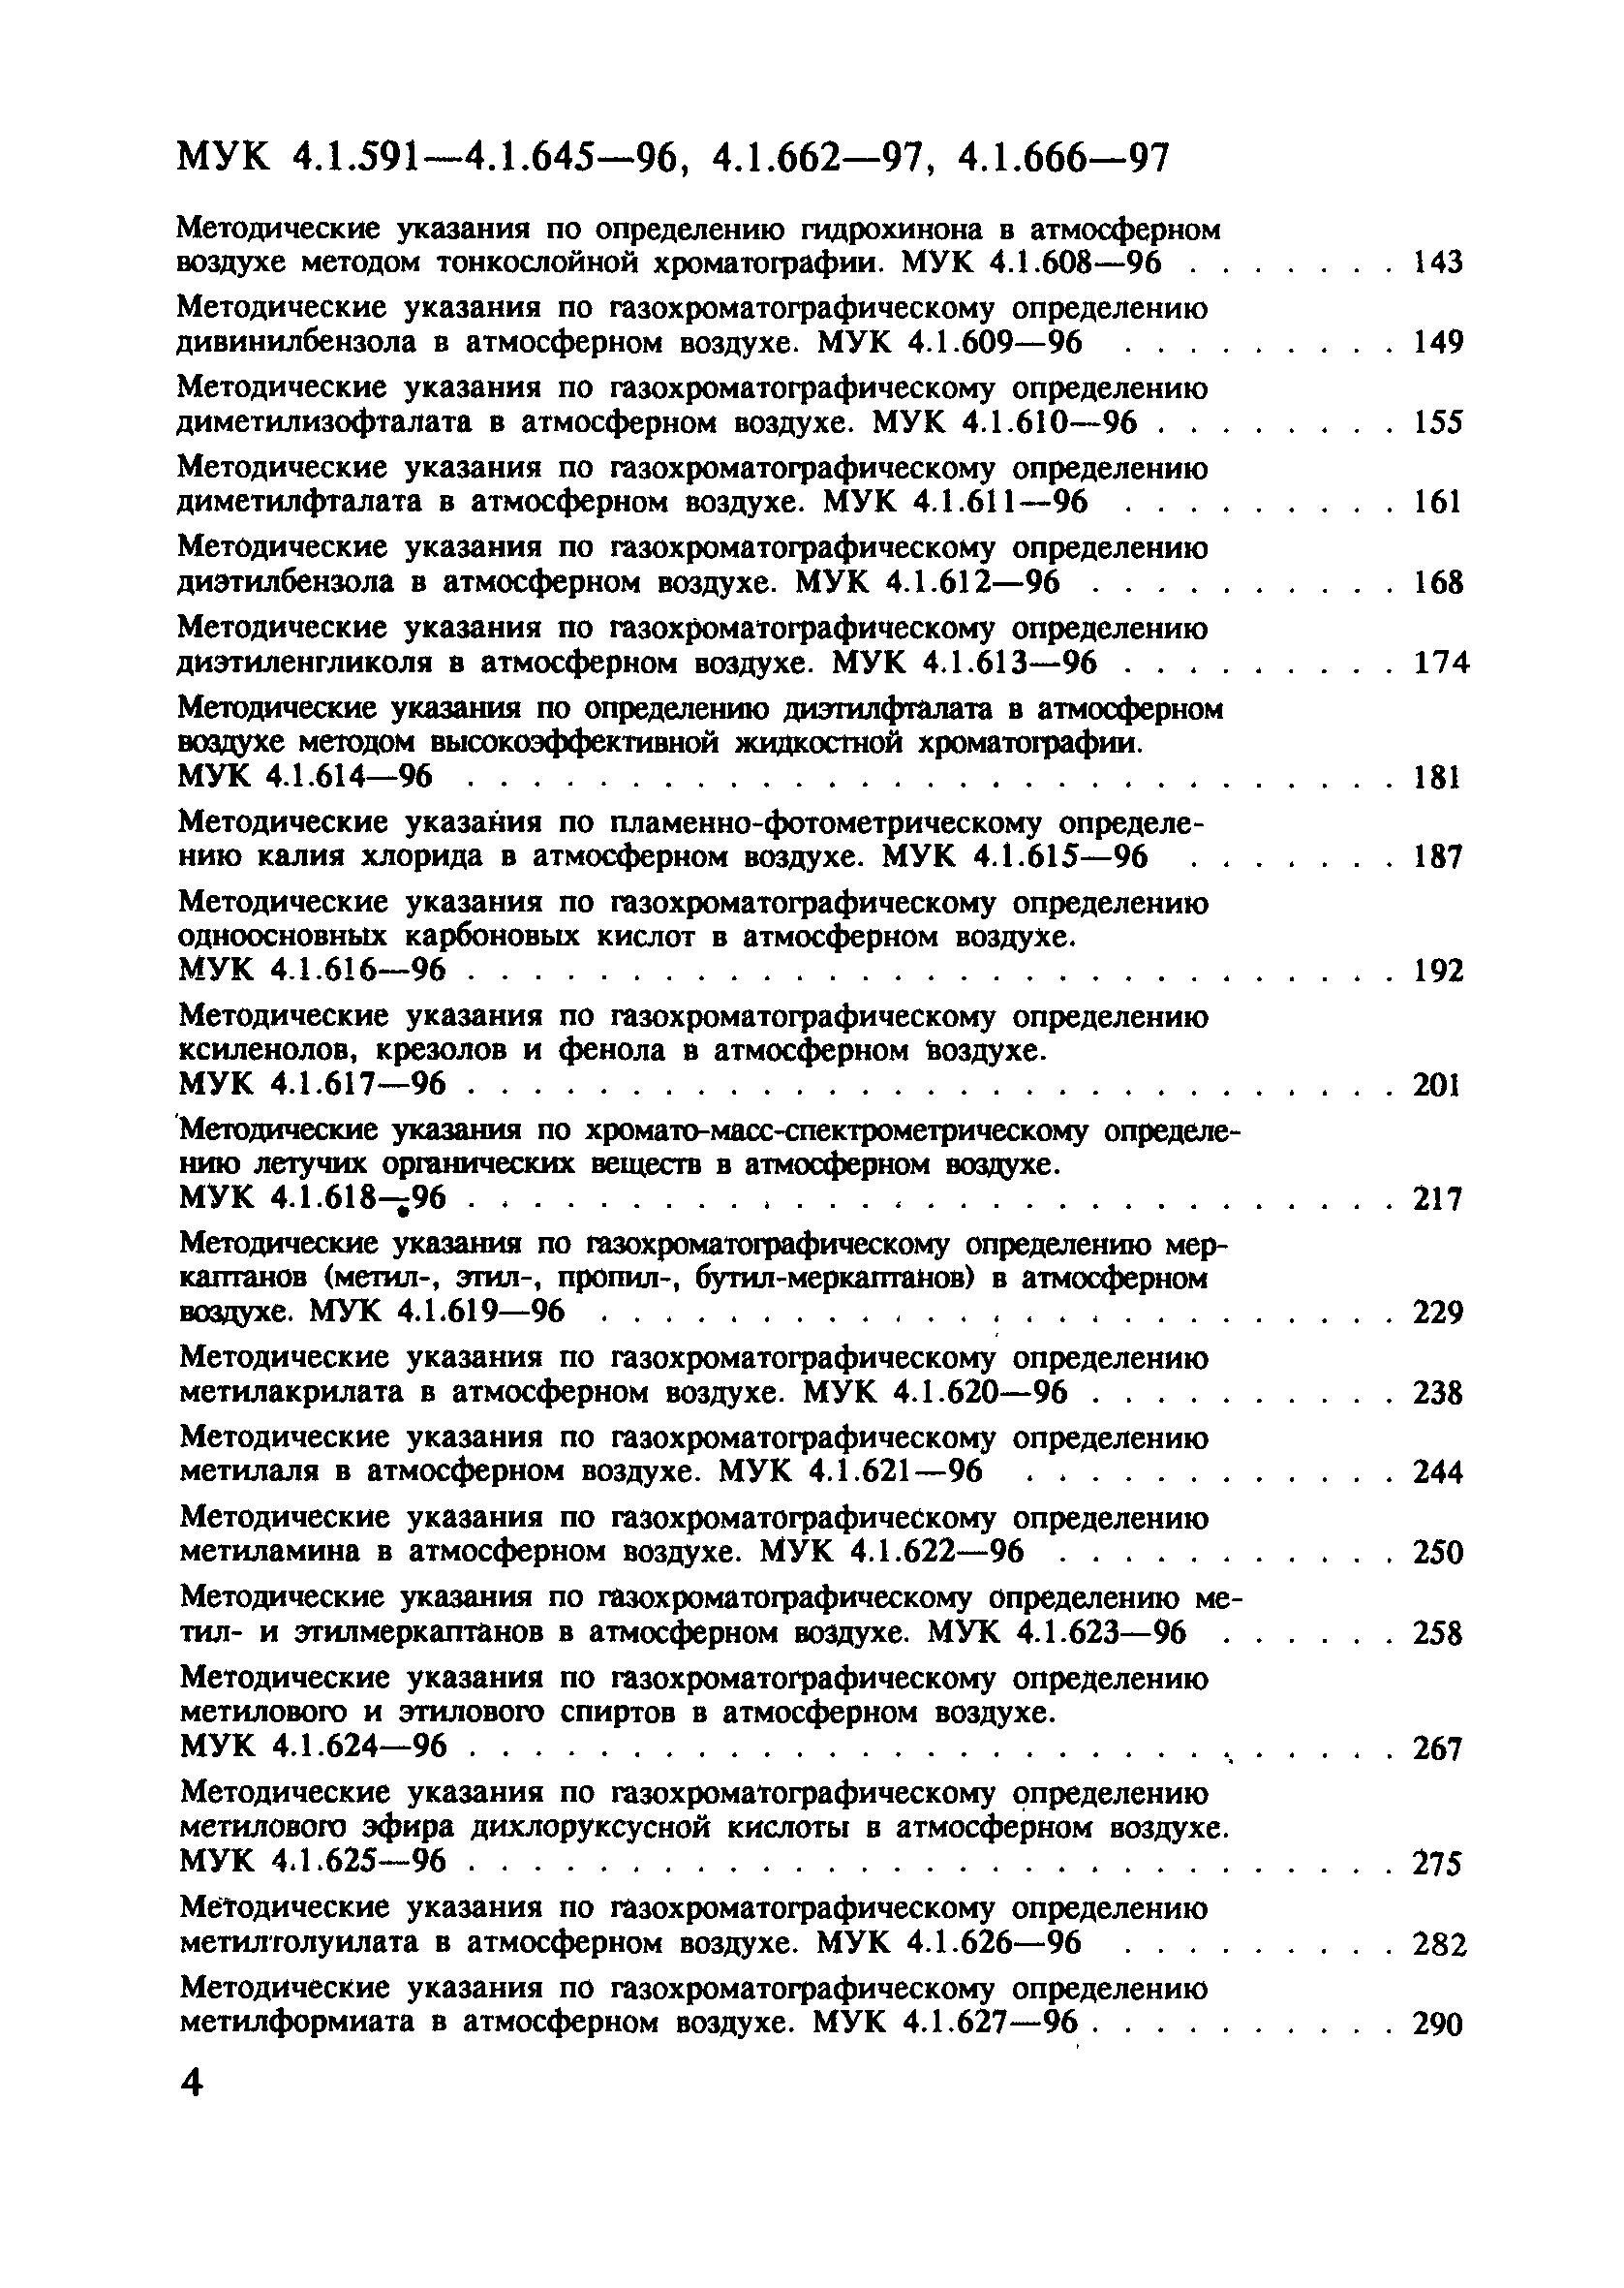 МУК 4.1.616-96